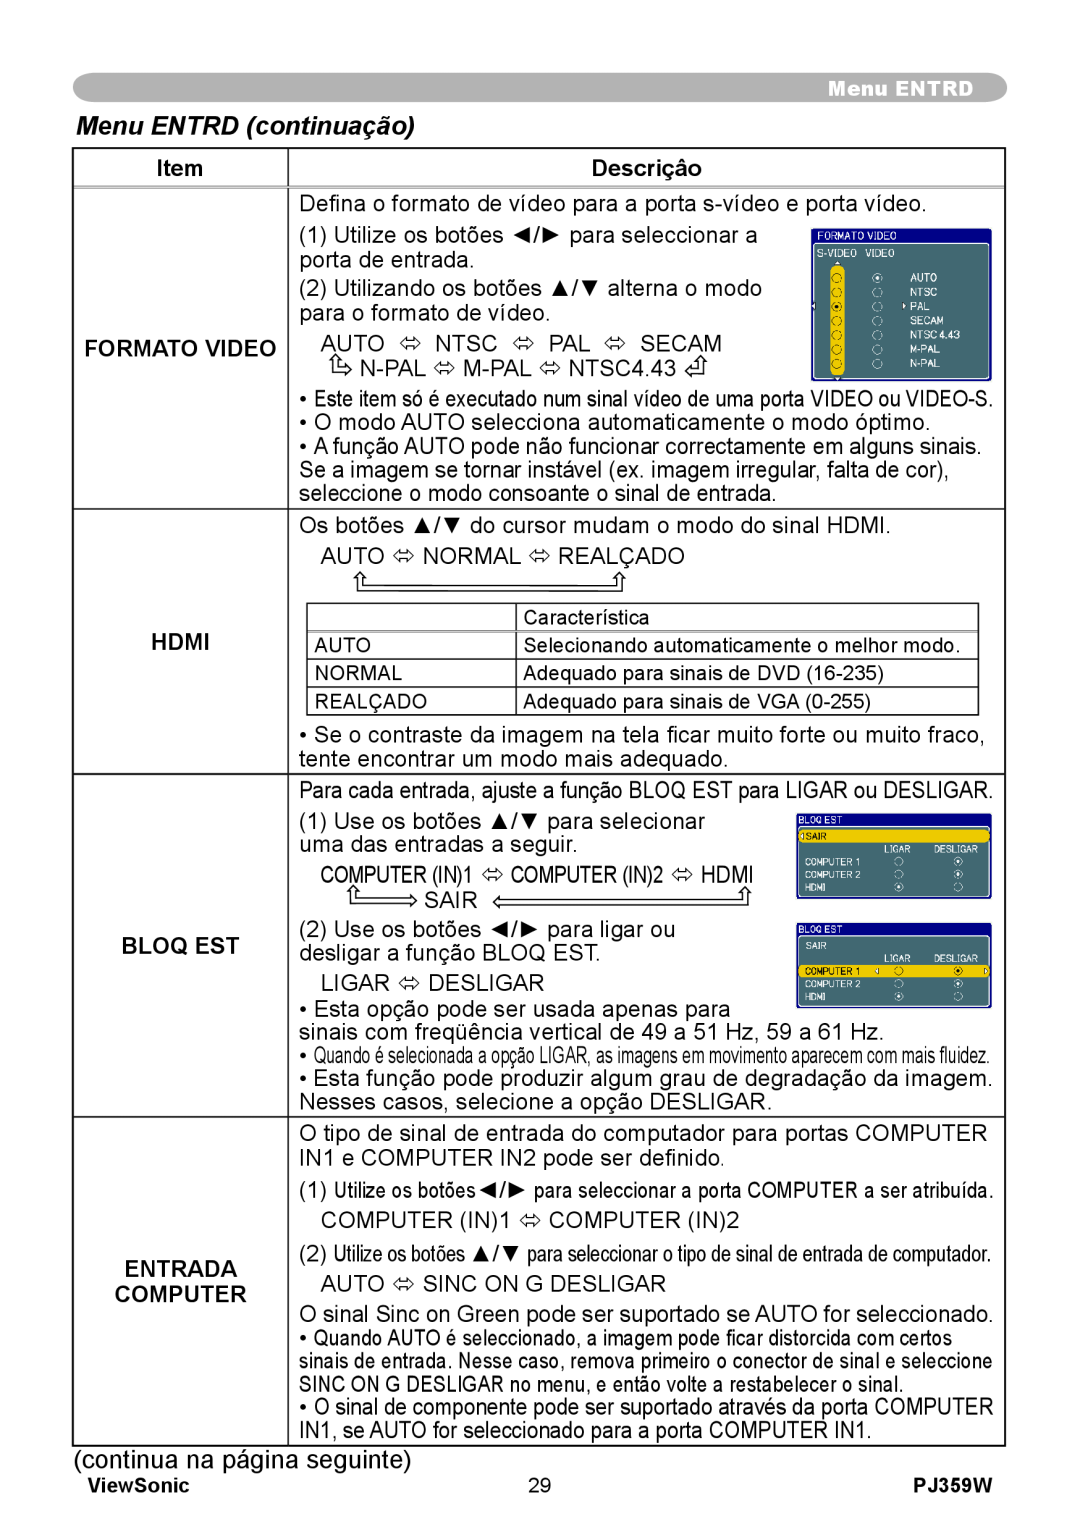 ViewSonic PJ359 manual Menu ENTRD continuação, Descriçâo, Formato Video, Hdmi, Bloq Est, Entrada, Computer 